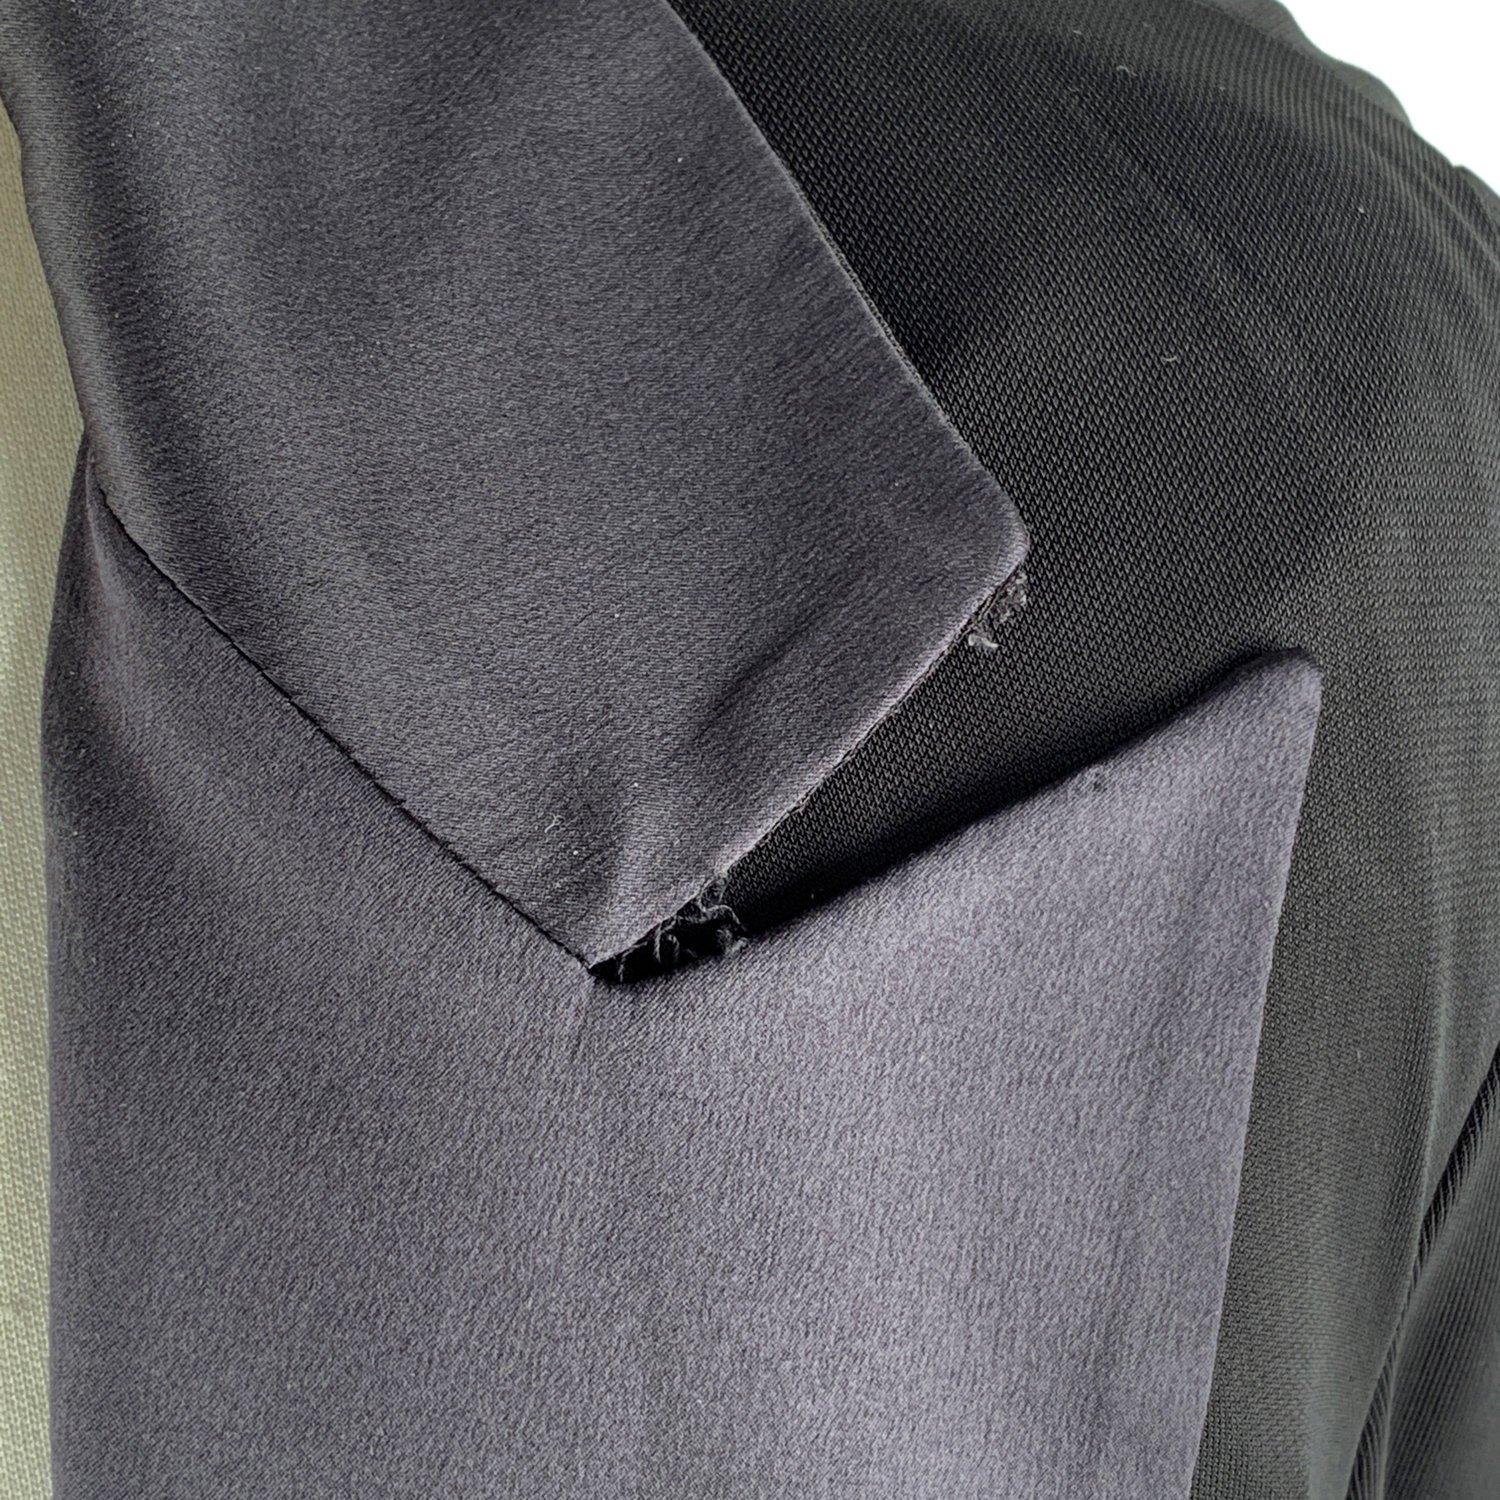 Gianfranco Ferré Black Blazer Jacket with Silk Trim Size 44 2